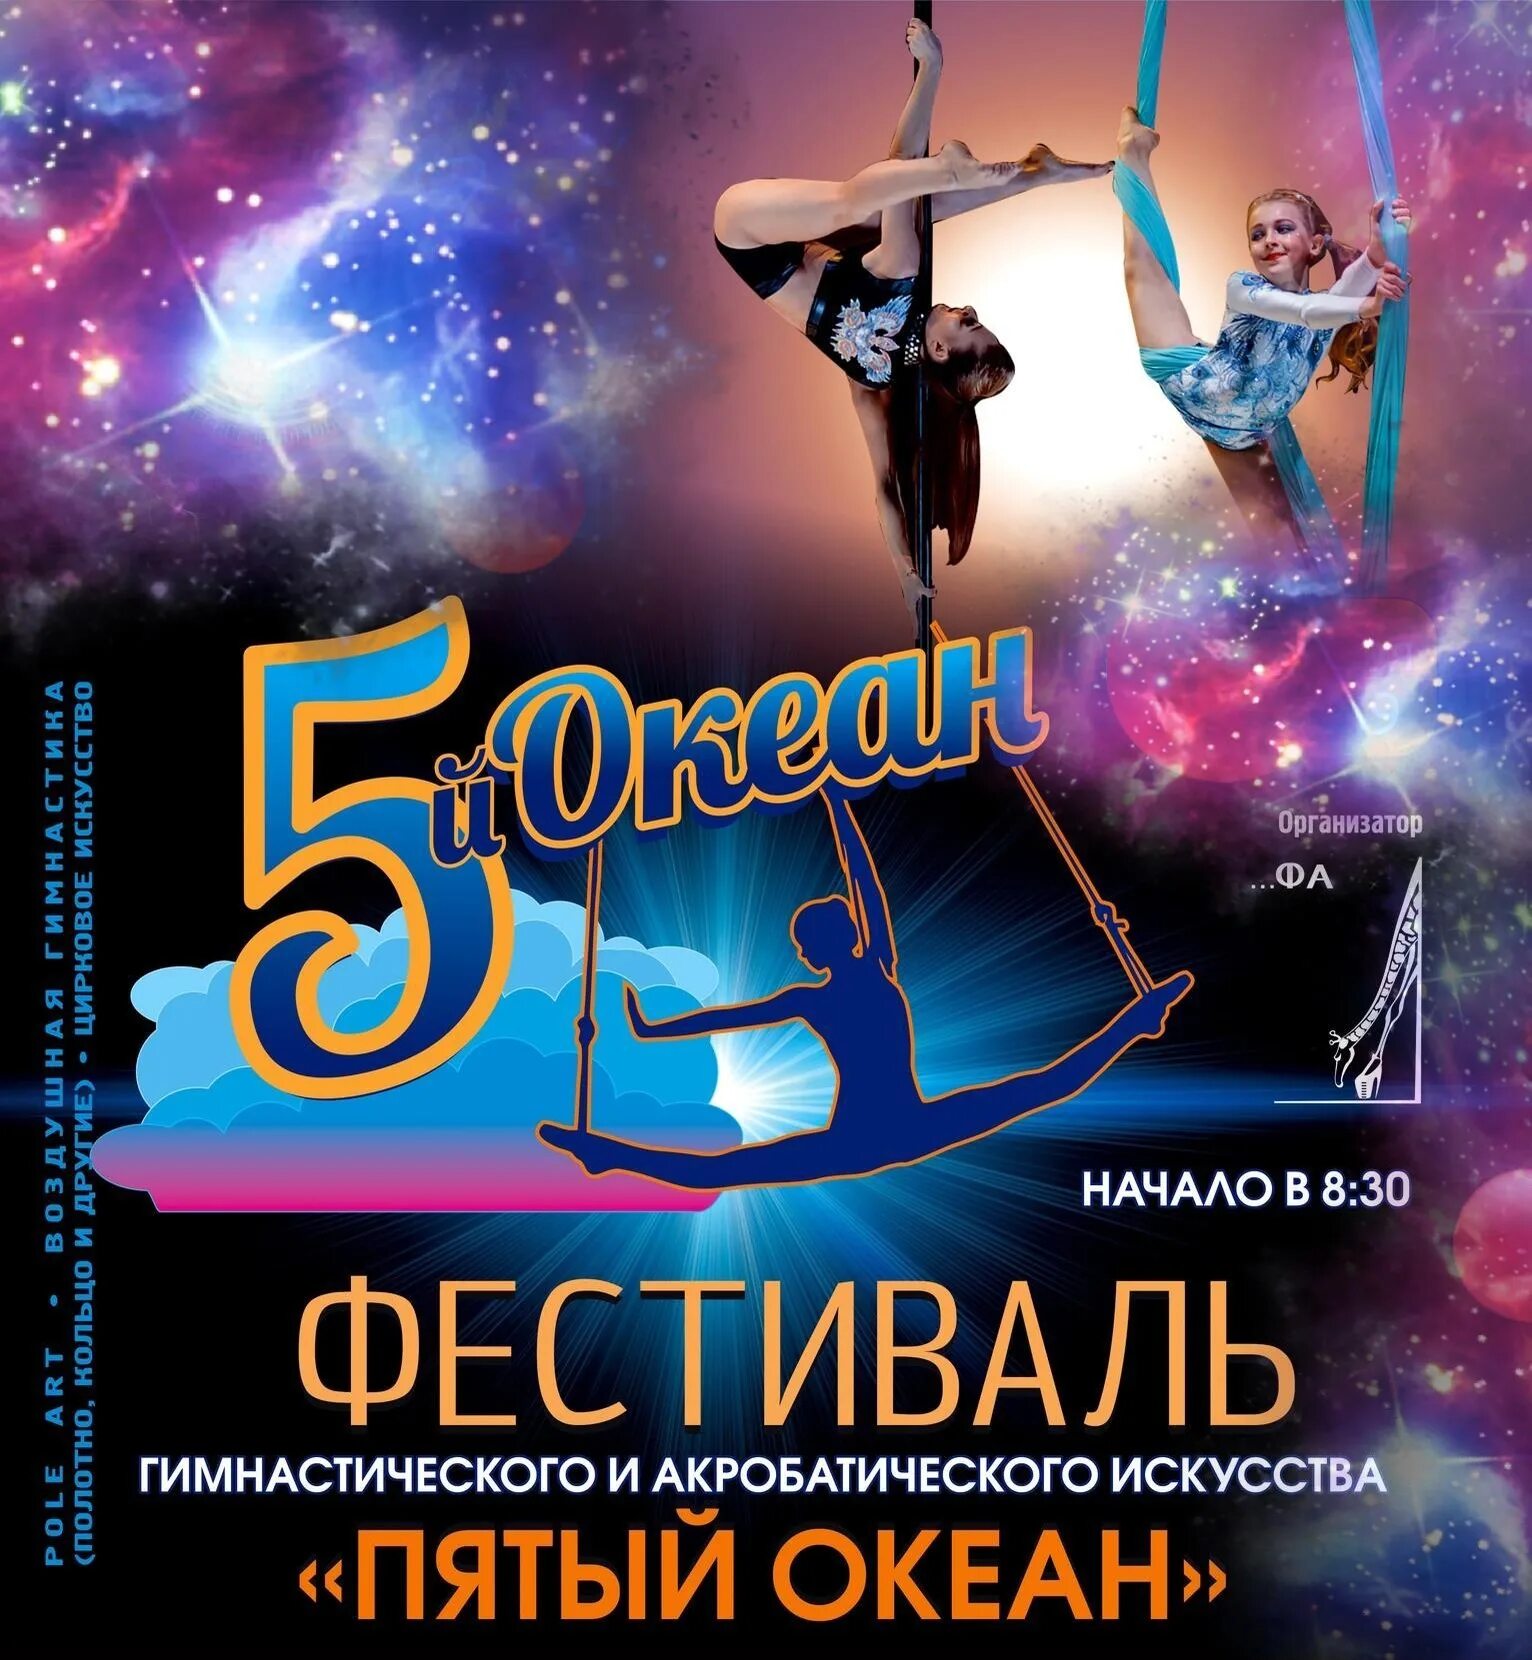 5 океанов новосибирск. Пятый океан фестиваль Новосибирск. Пятый океан группа. Пятый океан Ухта. Пятый океан Саранск.